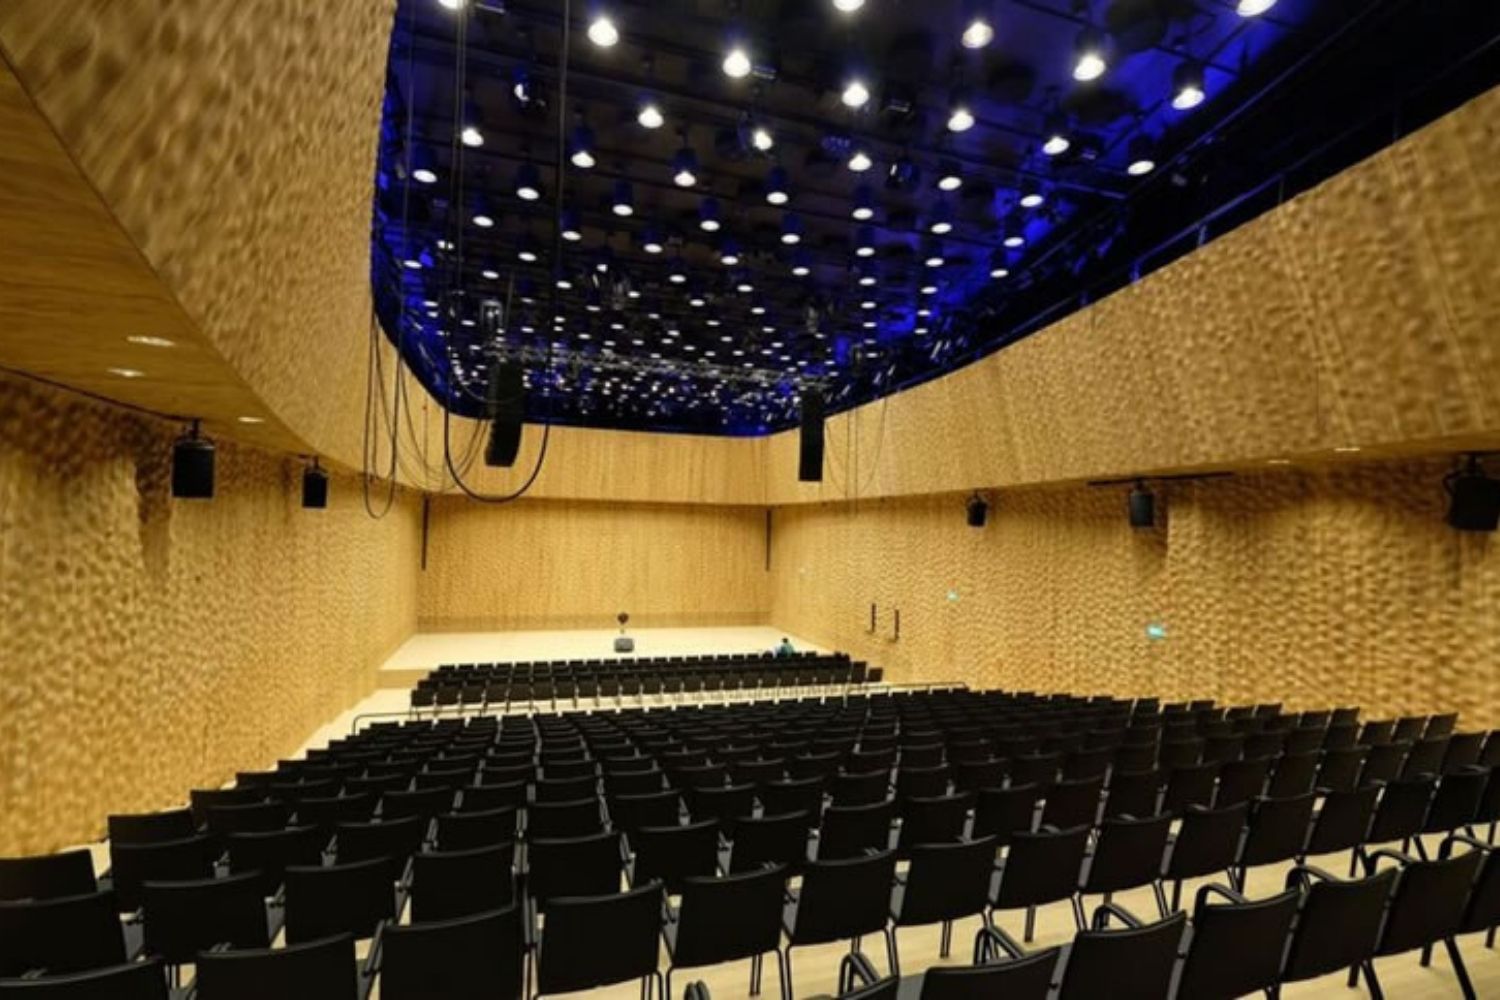 Elbphilharmonie in Hamberg, Germany. Acoustics by WSDG.